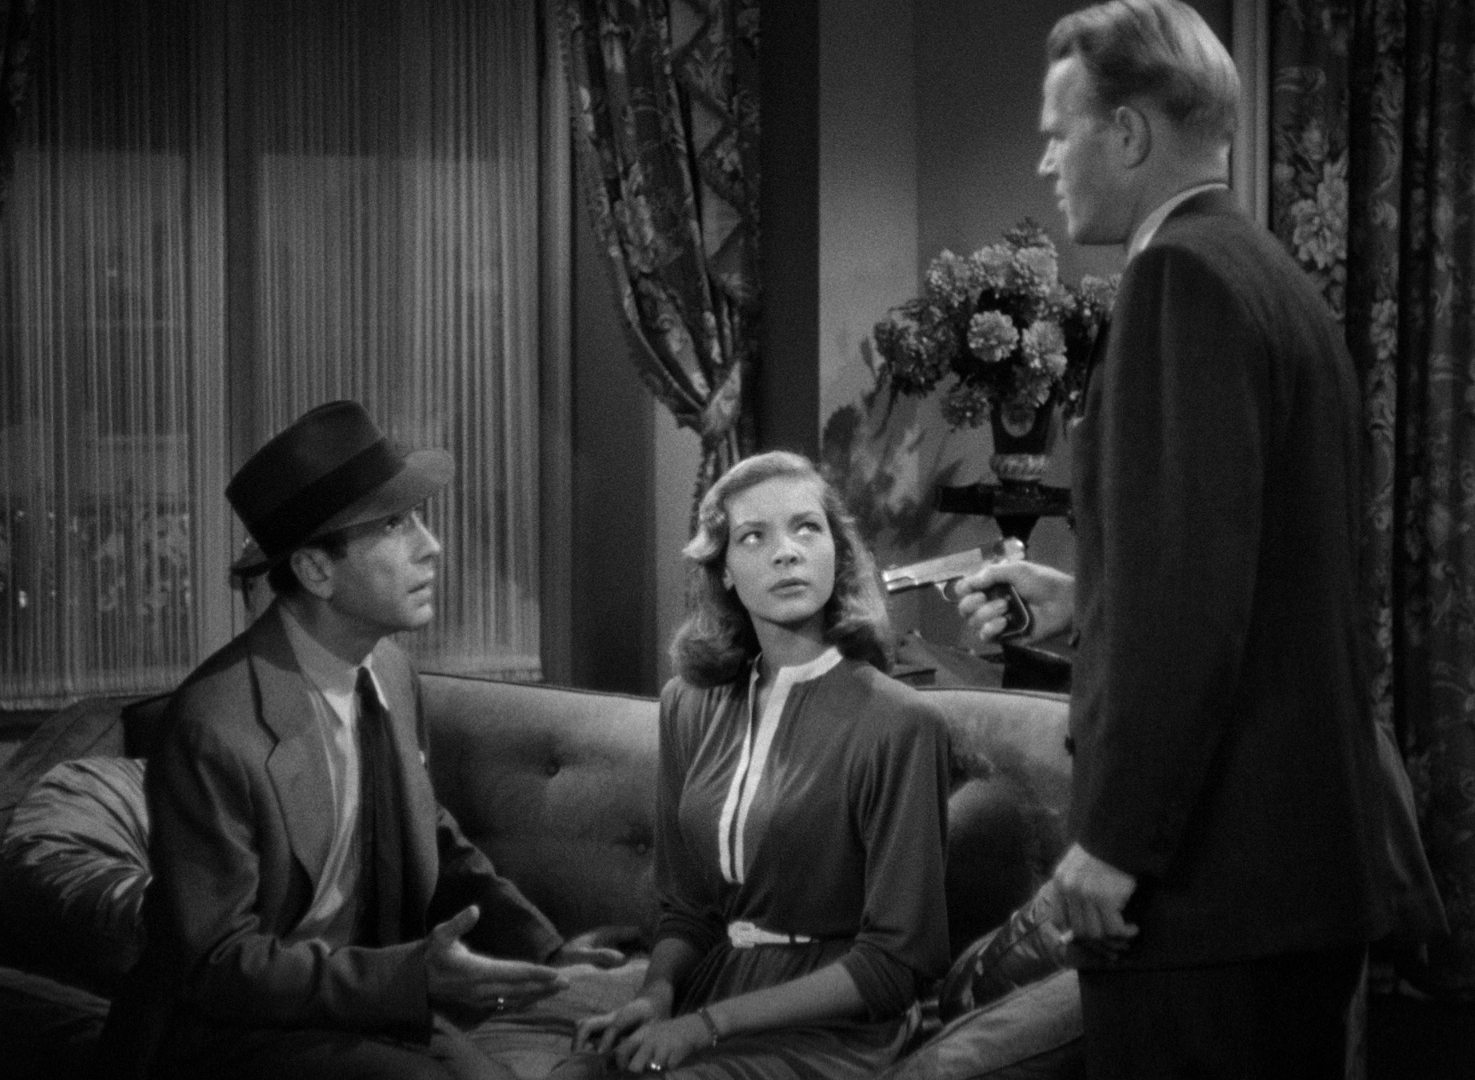 Schwarz-Weiß-Szene mit Humphrey Bogart und Lauren Bacall in einem Appartement auf einer Couch, beide blicken auf zu einem Mann mit gezückter Pistole.